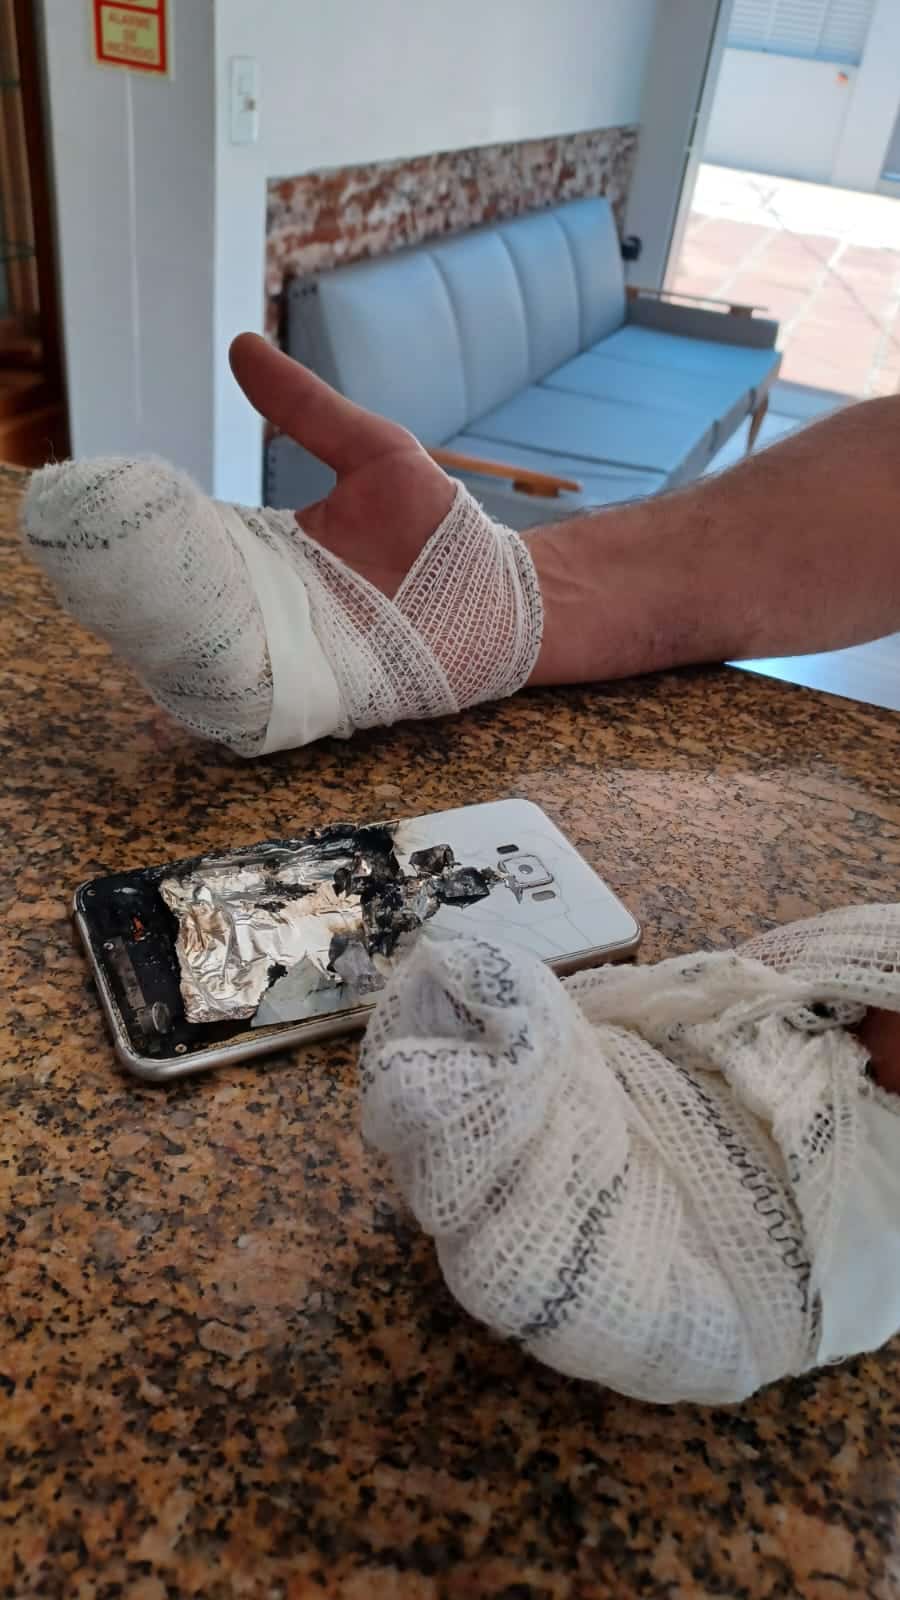 Celular explode no bolso de um homem; ele sofreu queimaduras nas mãos